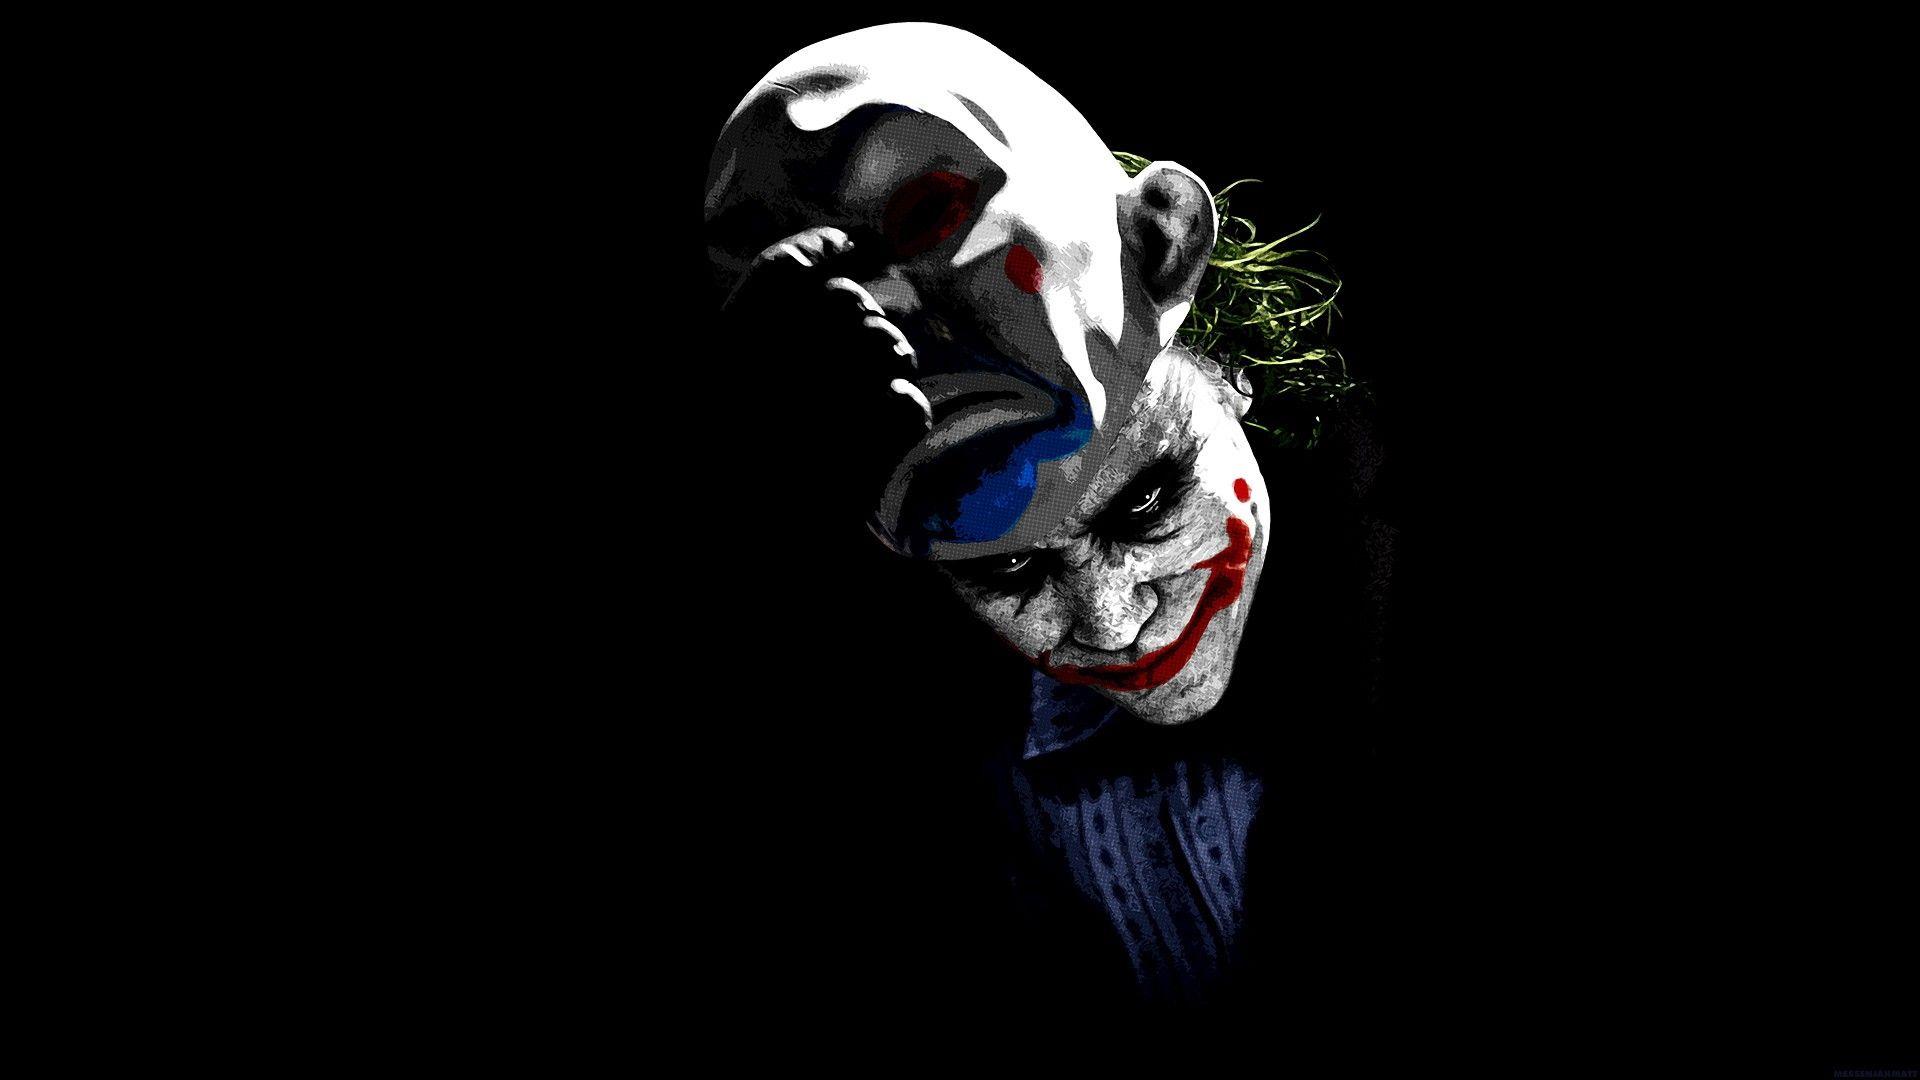 Joker. Pc desktop wallpaper, Dark knight wallpaper, Joker wallpaper